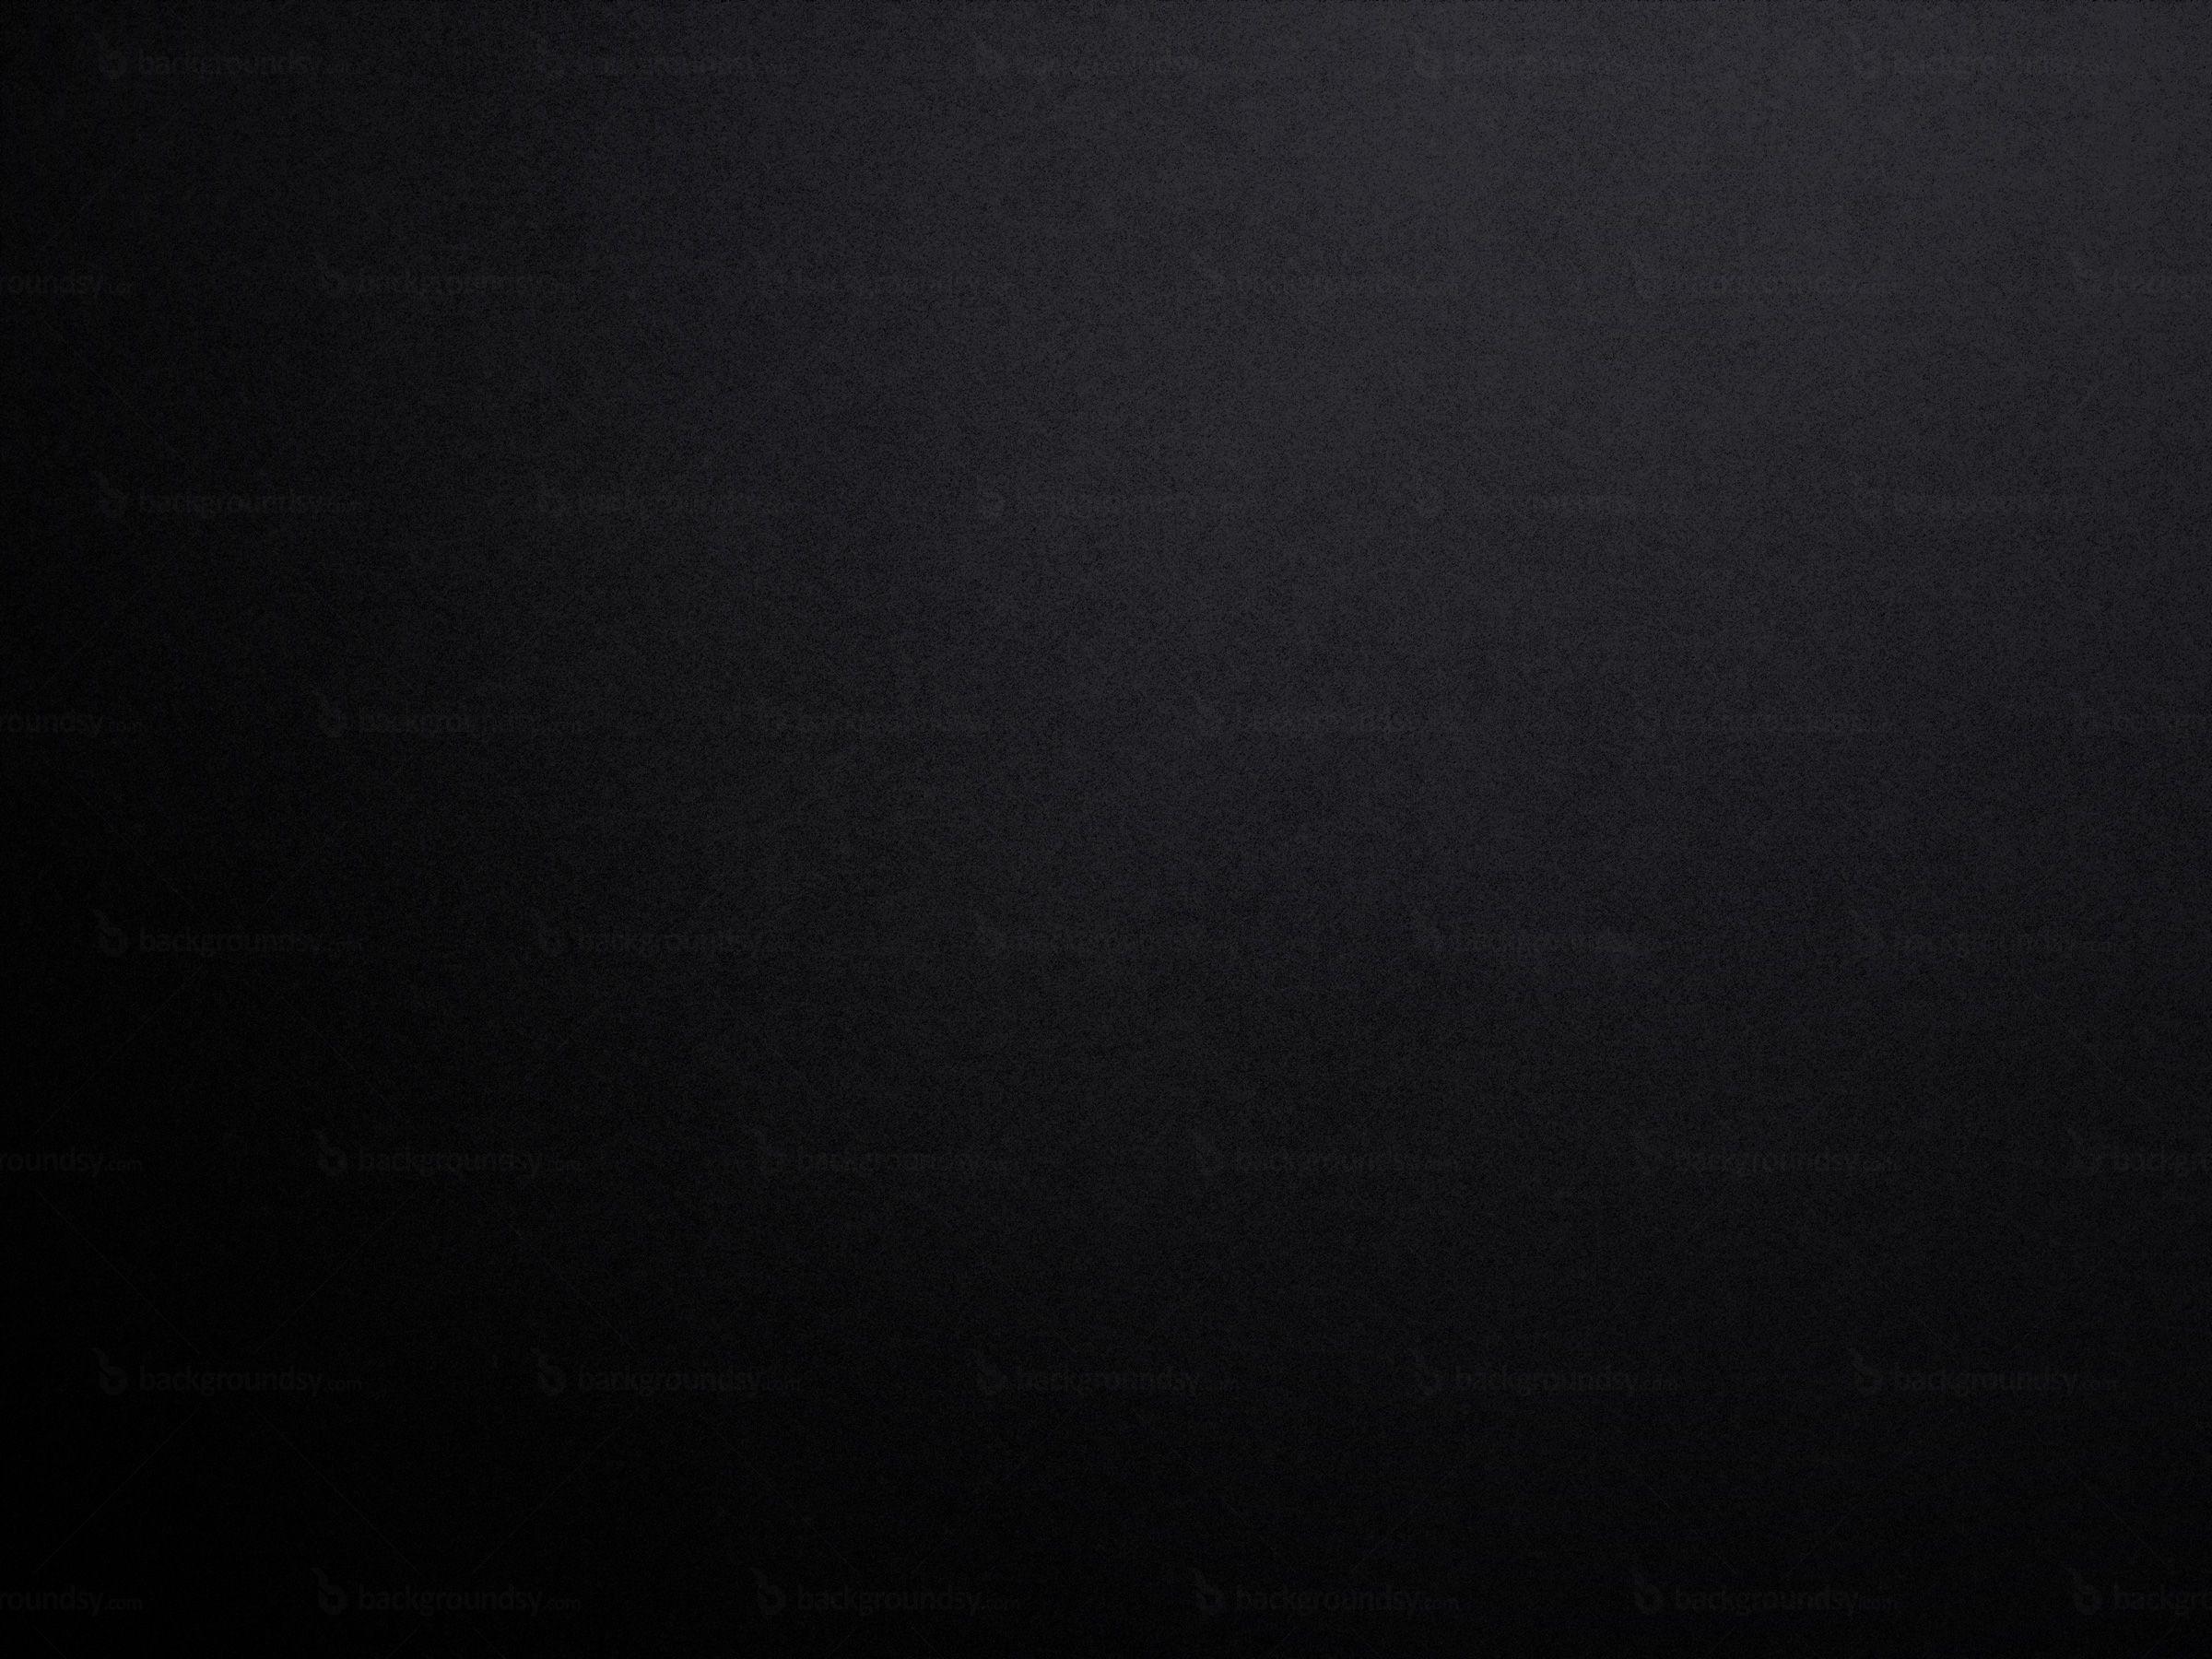 Matte black, Wallpaper Cave: Màu đen tuyền lịm làm nổi bật các hình ảnh và tạo cảm giác sang trọng. Từ nay bạn không cần tìm kiếm đâu xa để tìm những bức hình nền đen tuyền đẹp và độc đáo. Hãy cùng khám phá bộ sưu tập màu đen matte tại Wallpaper Cave ngay hôm nay.